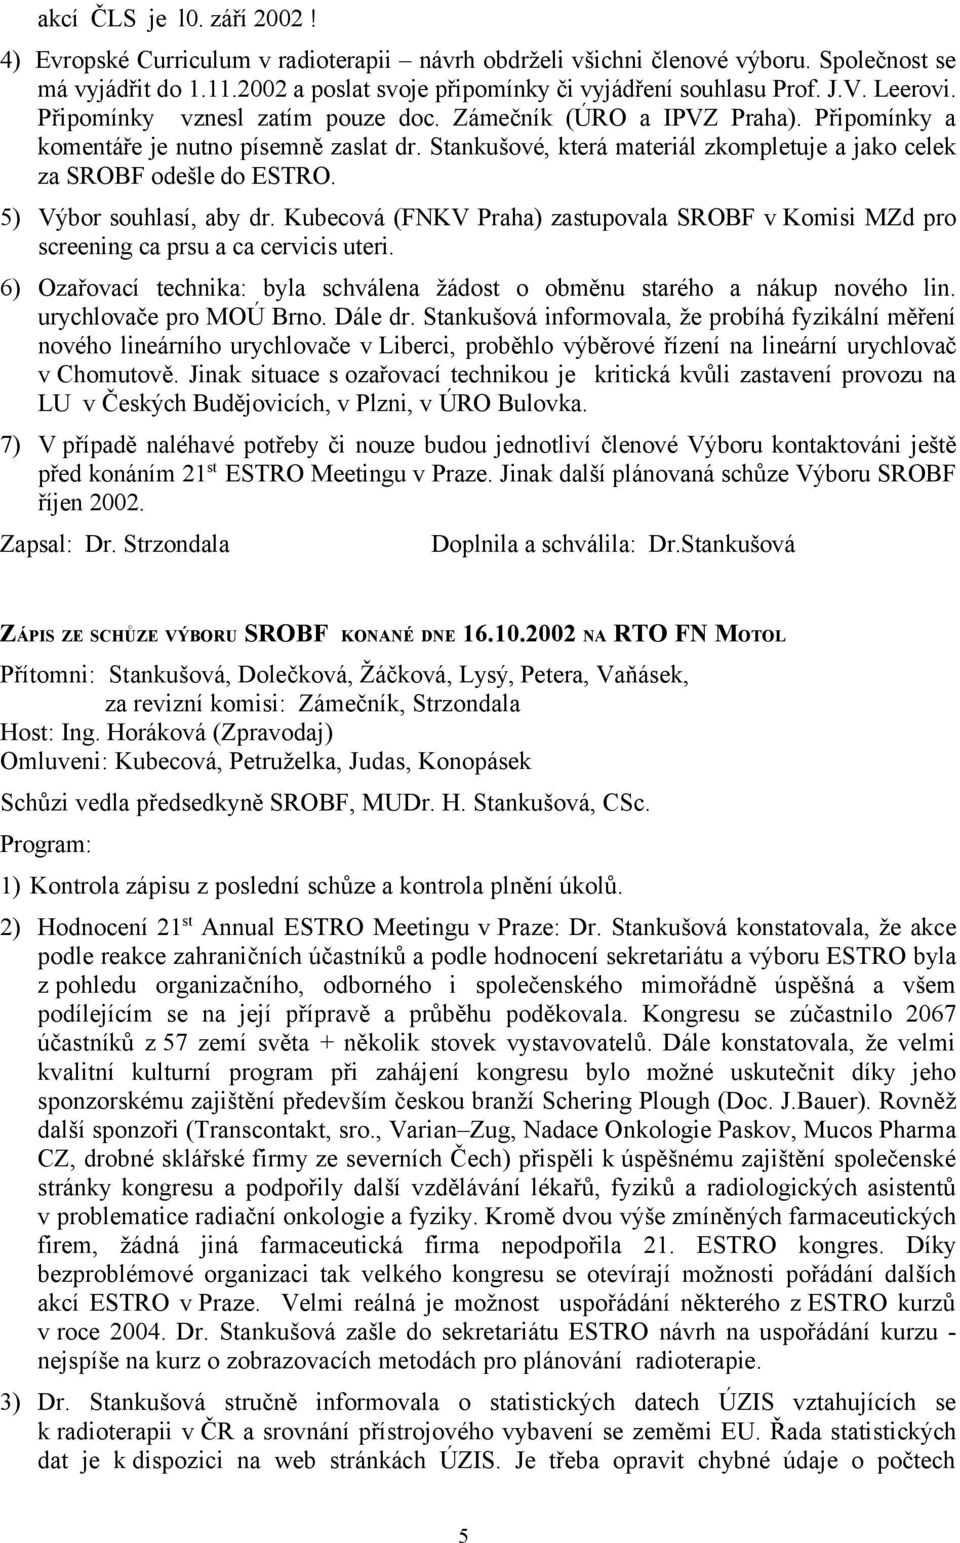 Stankušové, která materiál zkompletuje a jako celek za SROBF odešle do ESTRO. 5) Výbor souhlasí, aby dr. Kubecová (FNKV Praha) zastupovala SROBF v Komisi MZd pro screening ca prsu a ca cervicis uteri.